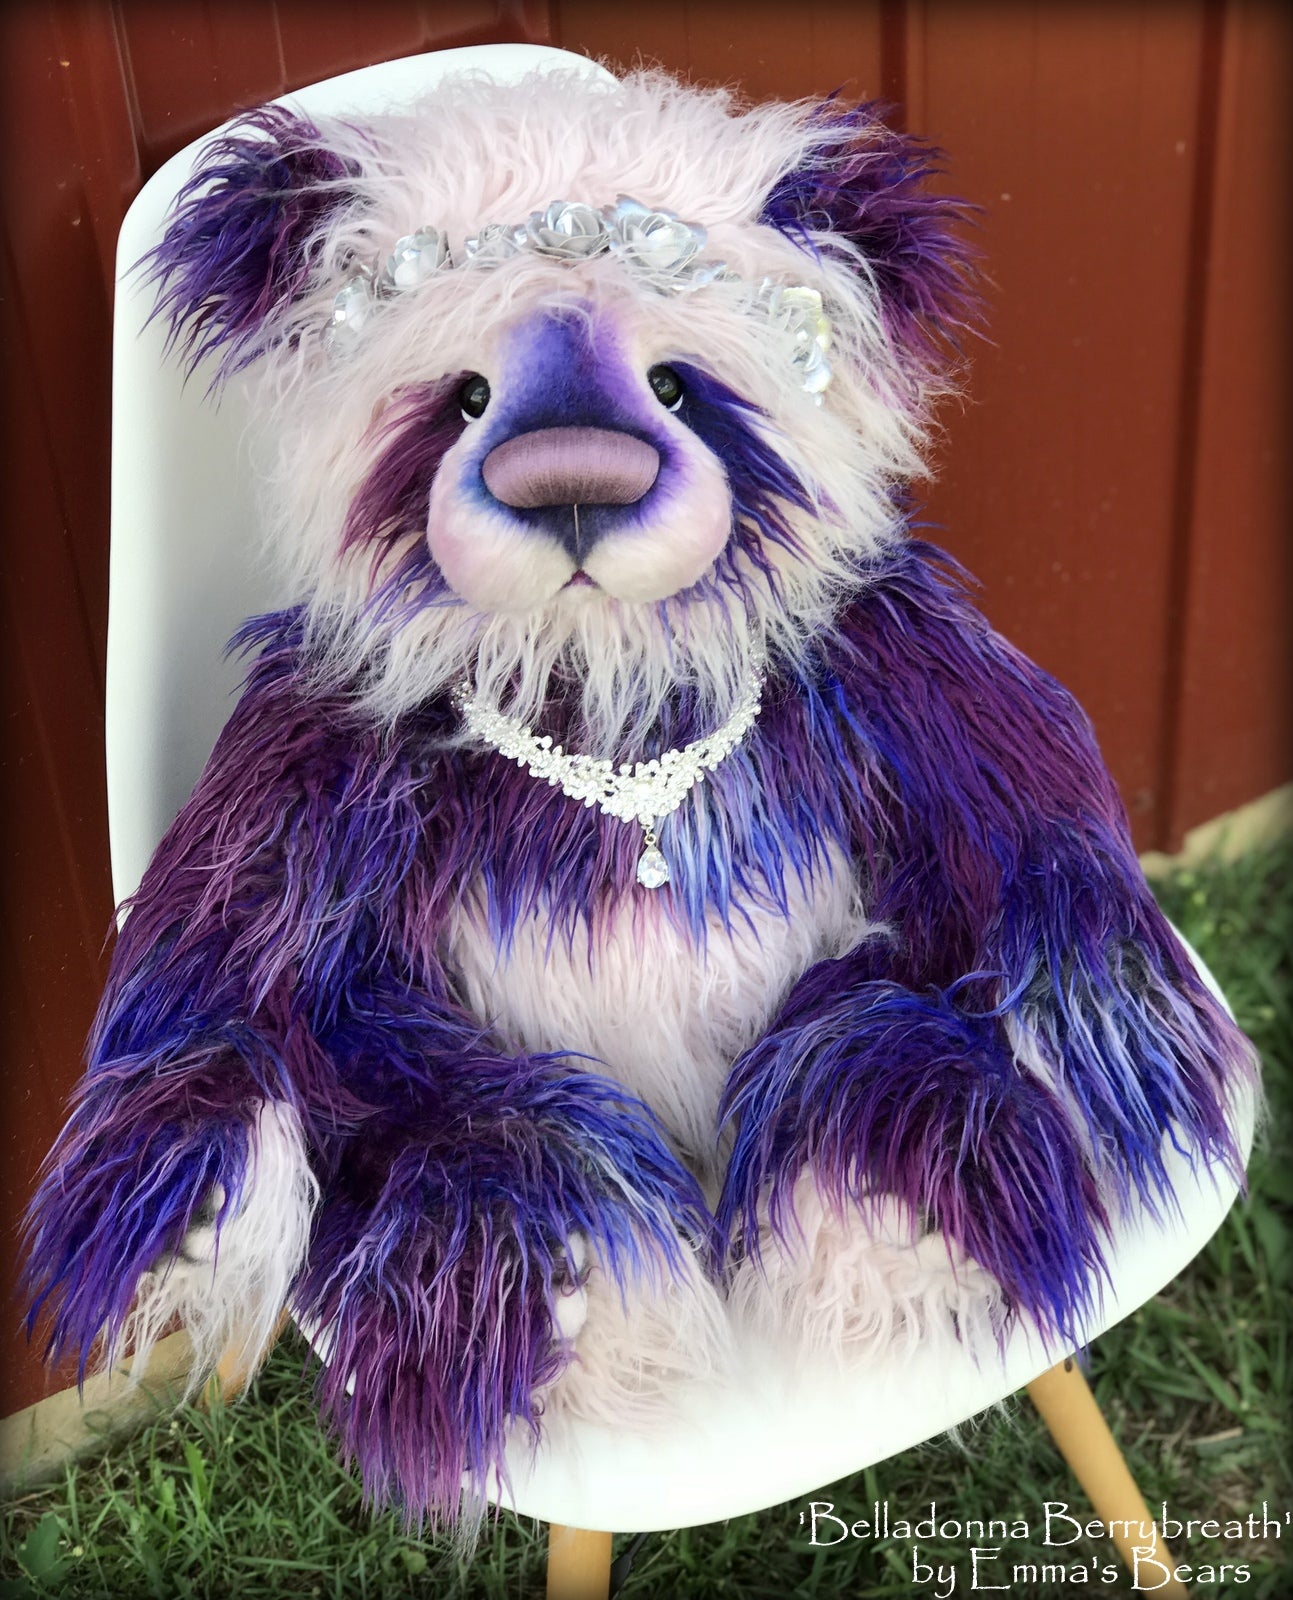 Belladonna Berrybreath - 28" Faux Fur Artist Bear by Emmas Bears - OOAK